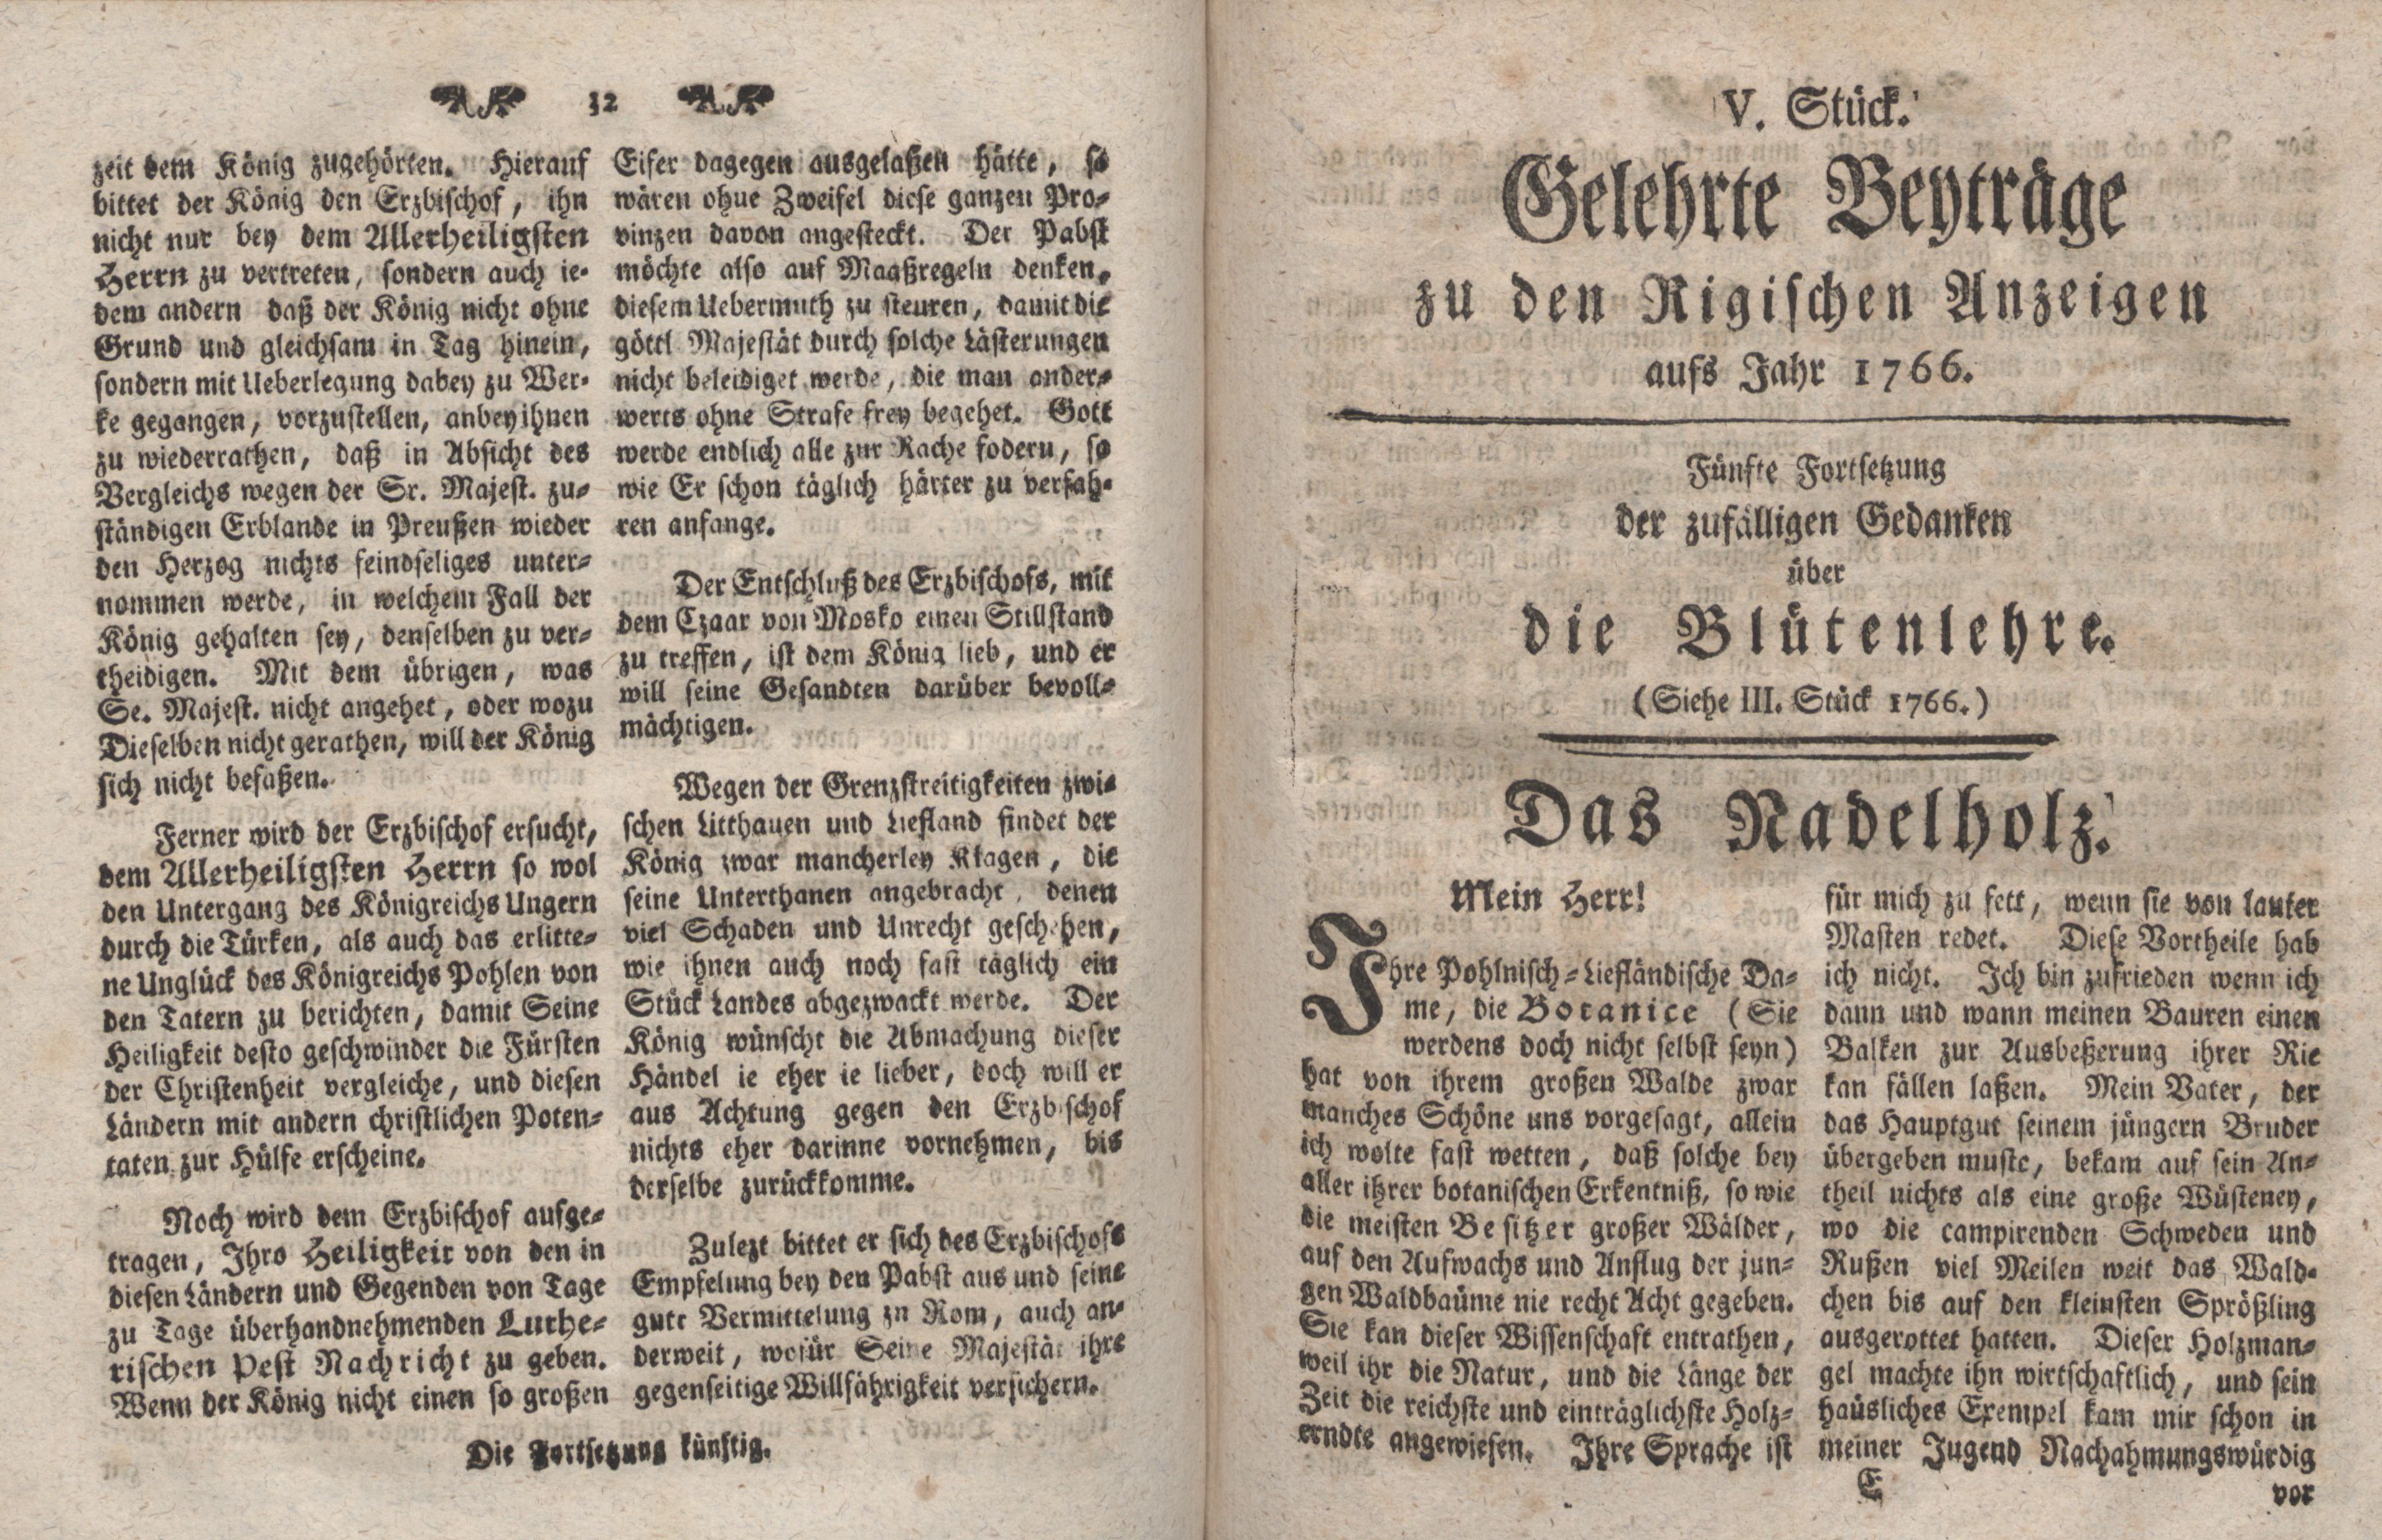 Gelehrte Beyträge zu den Rigischen Anzeigen 1766 (1766) | 17. (32-33) Main body of text